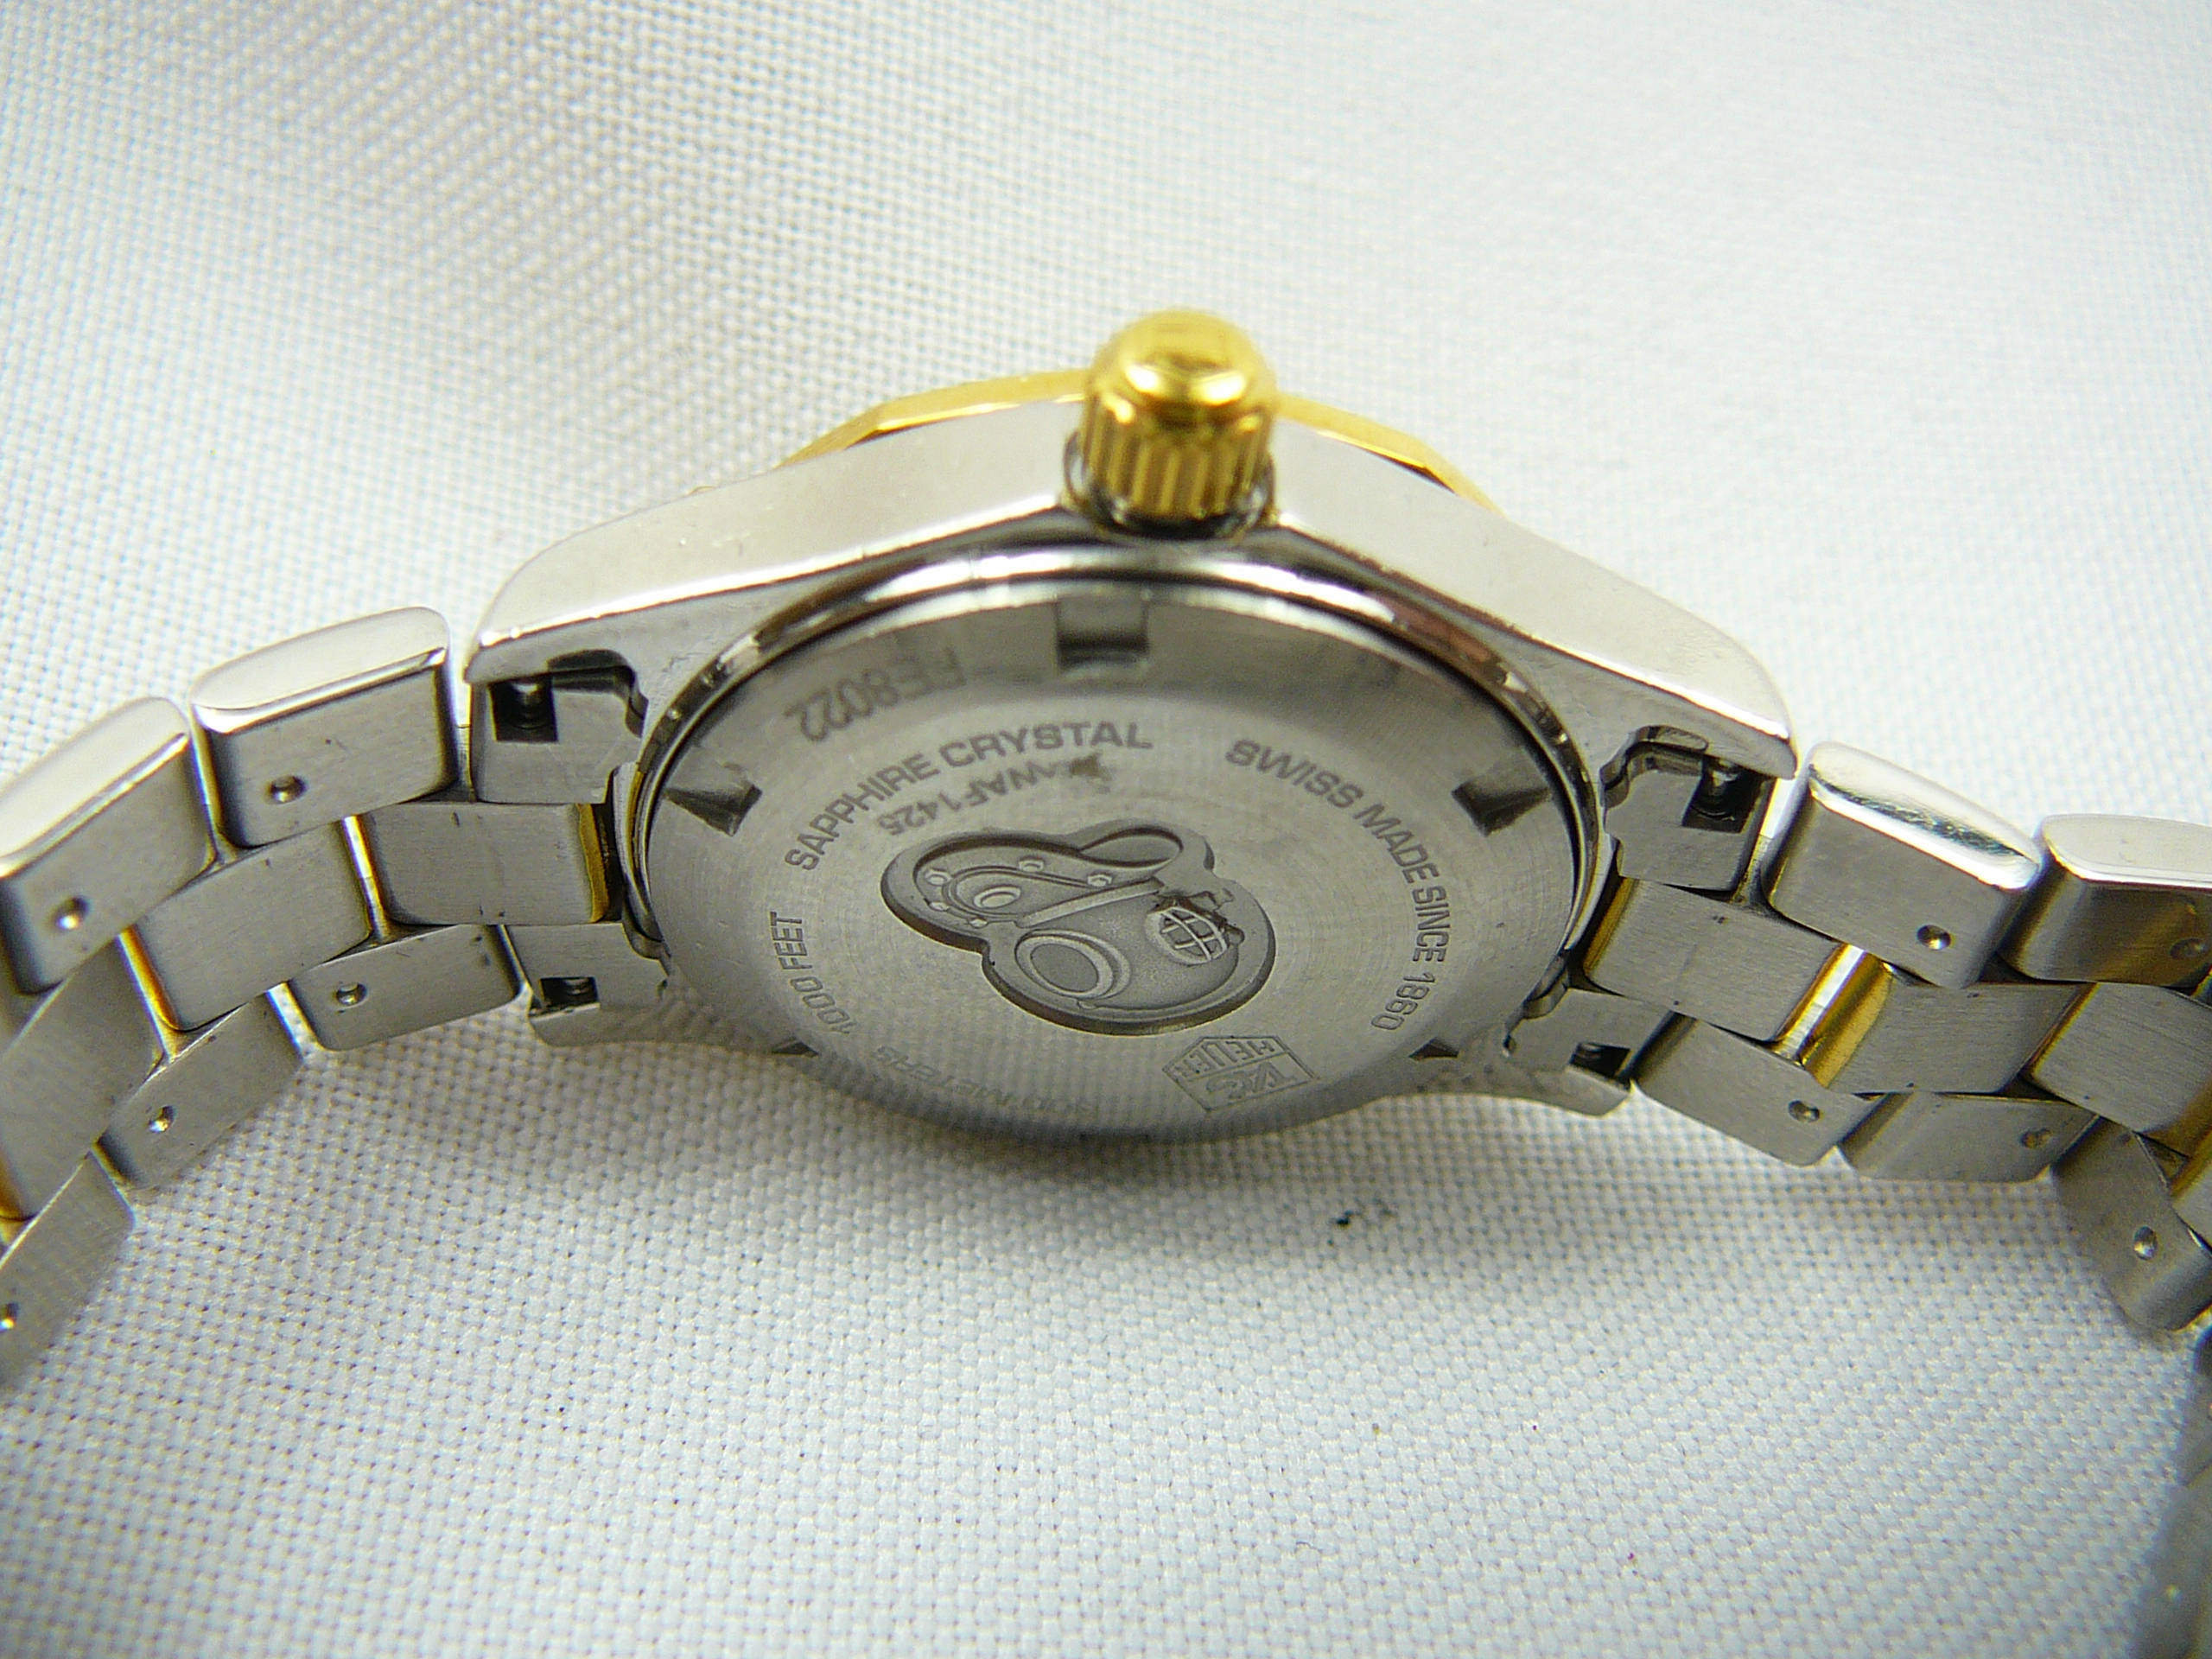 Ladies Tag Heuer wrist watch - Image 3 of 3